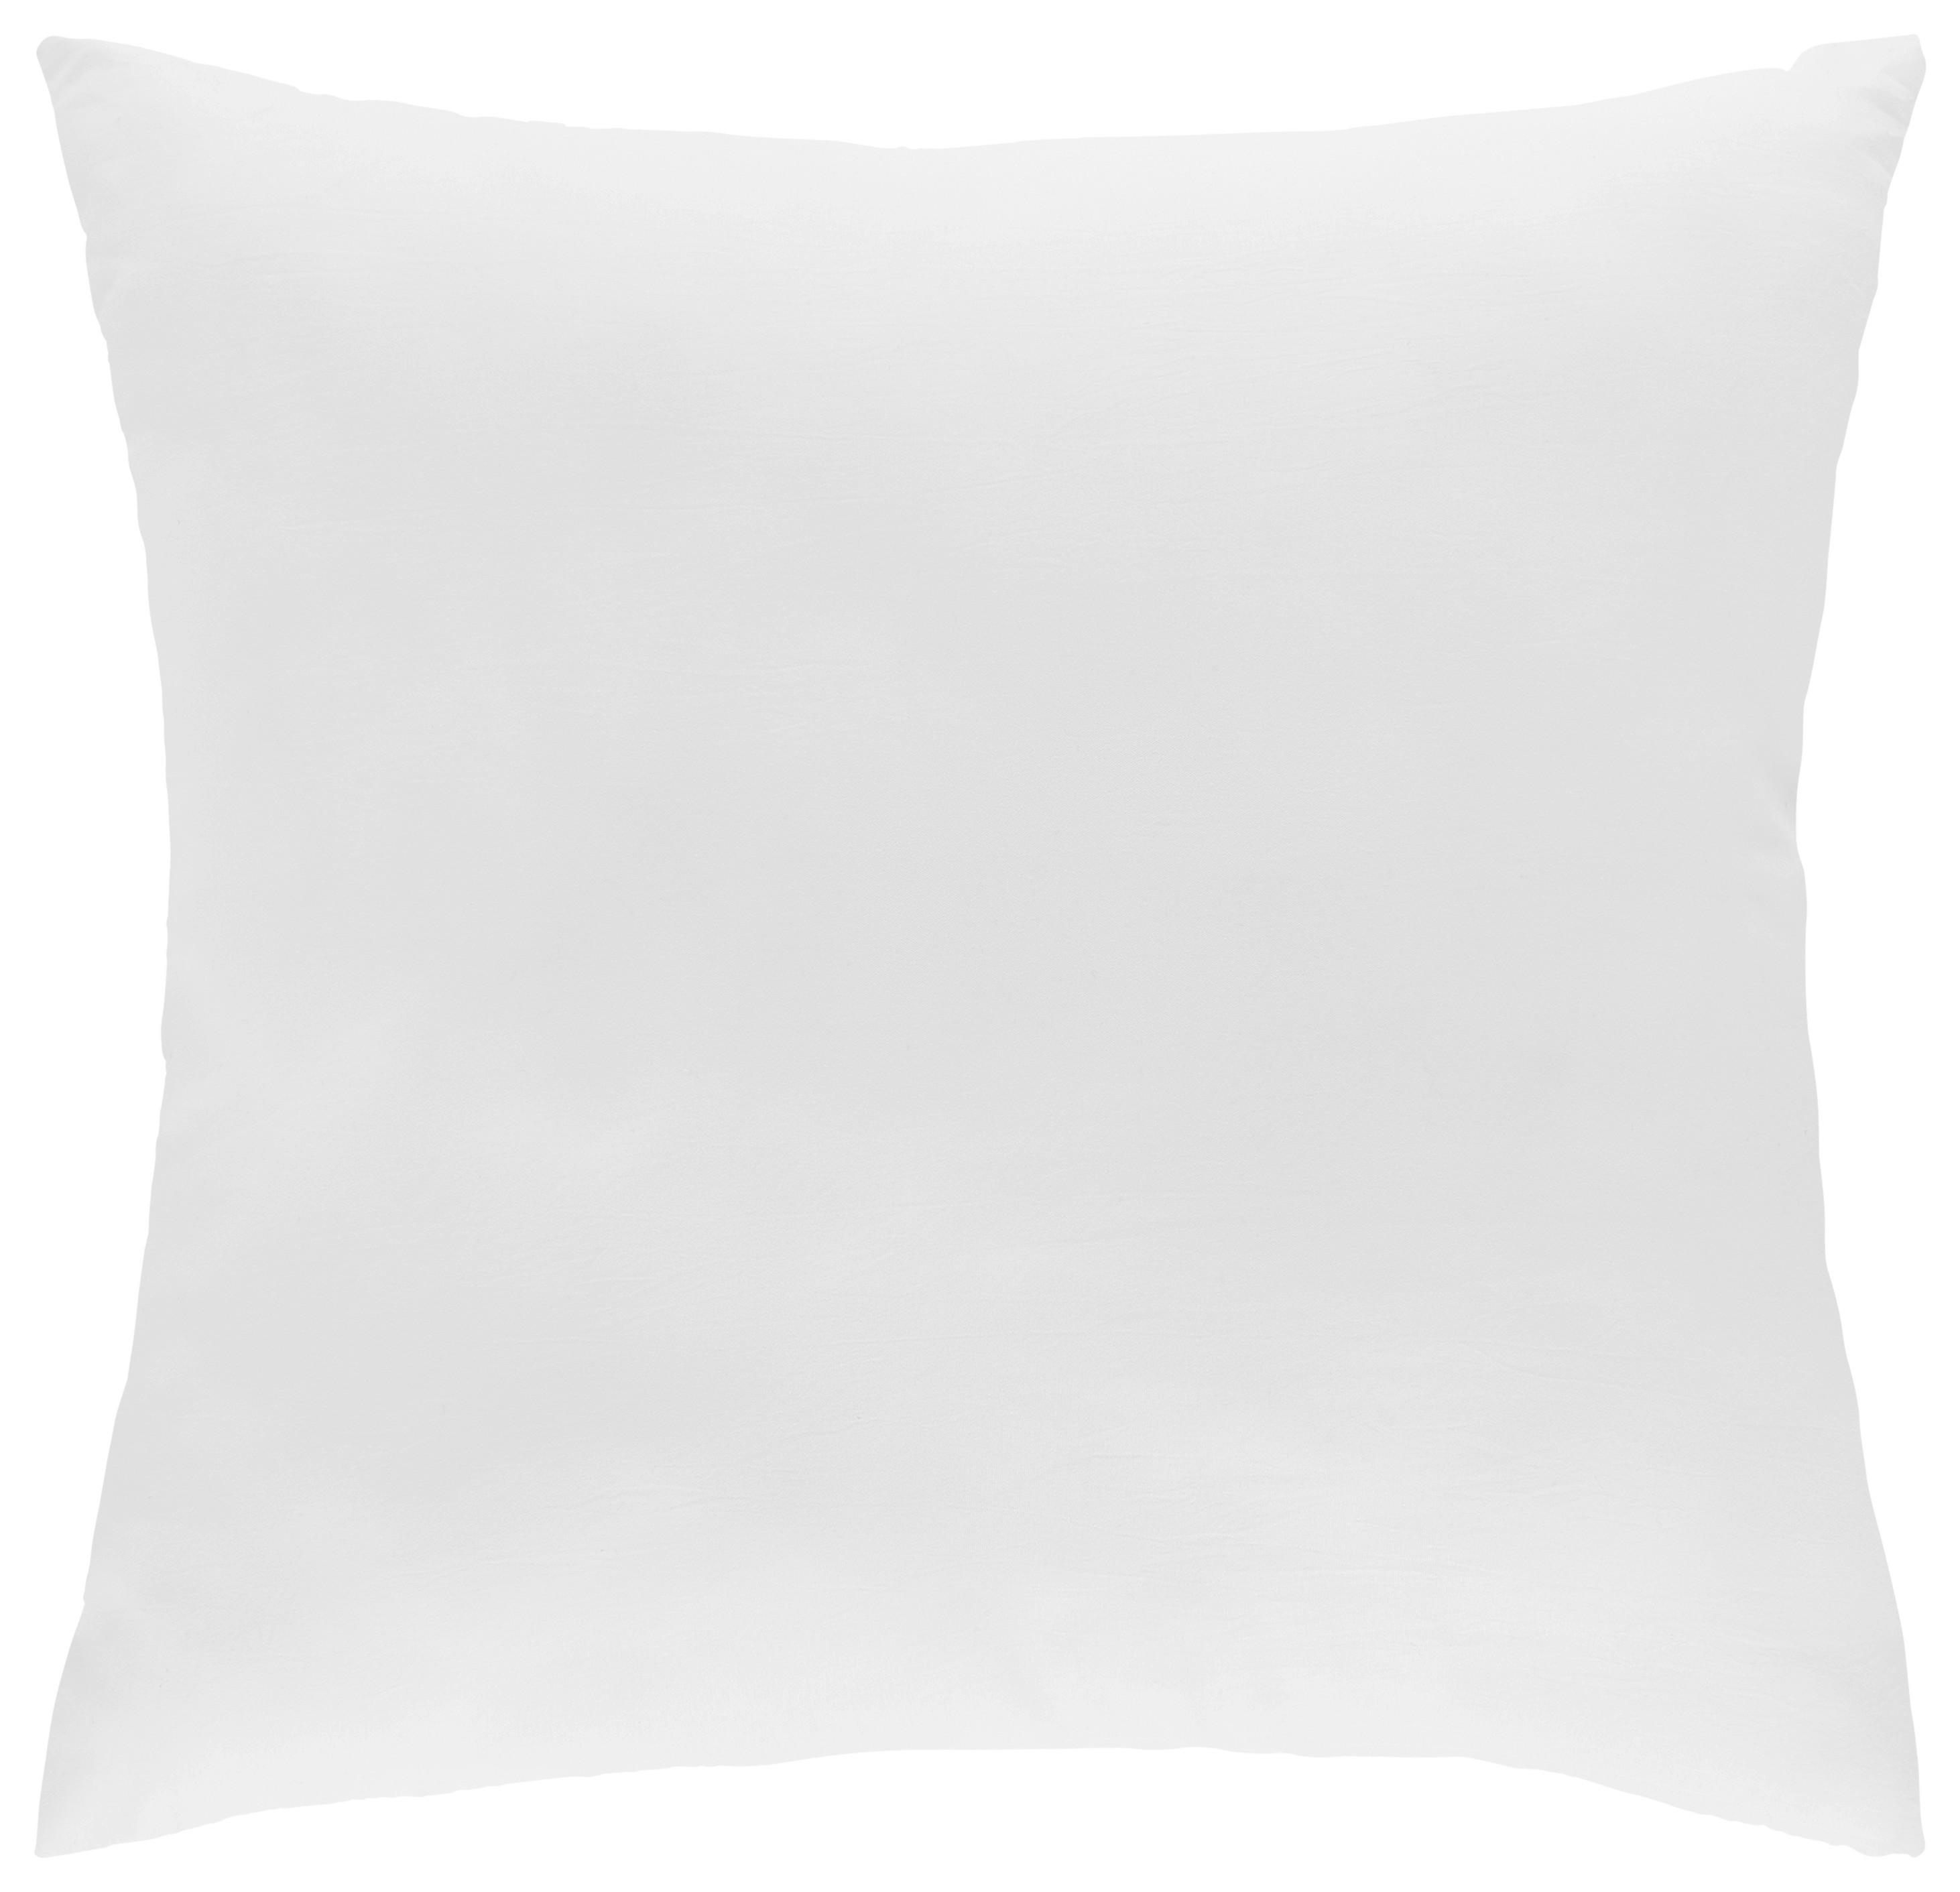 Výplňový Polštář Ani, 50/50cm, Bílá - bílá, textil (50/50cm) - Modern Living